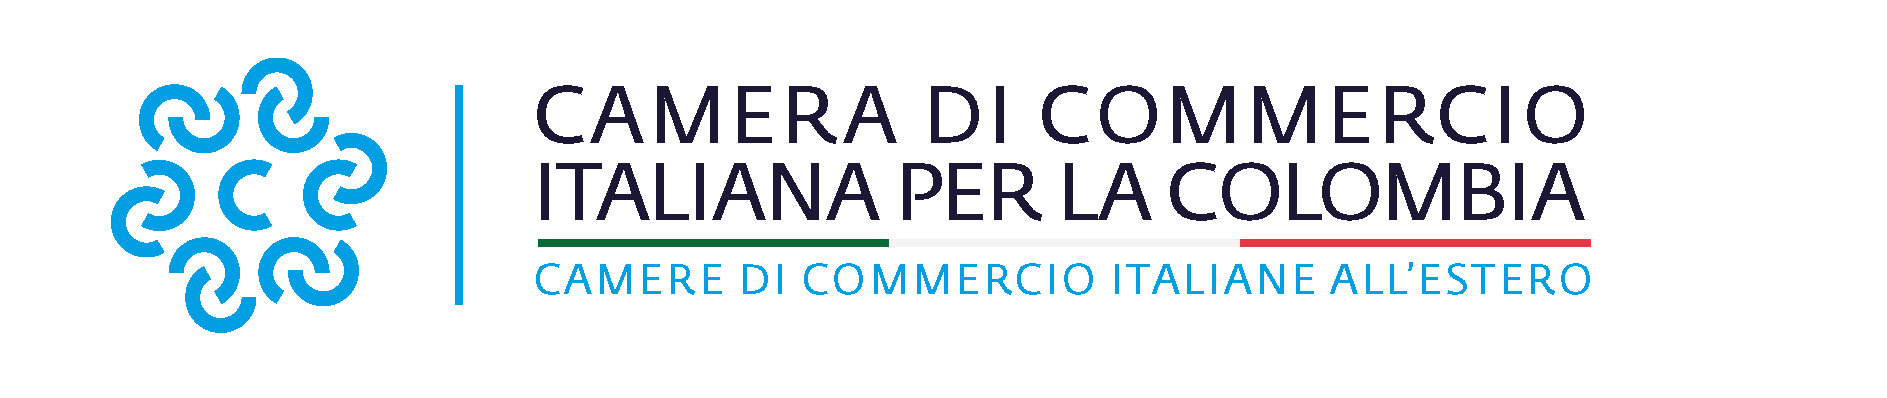 logo camera di commercio italiana per la colombia